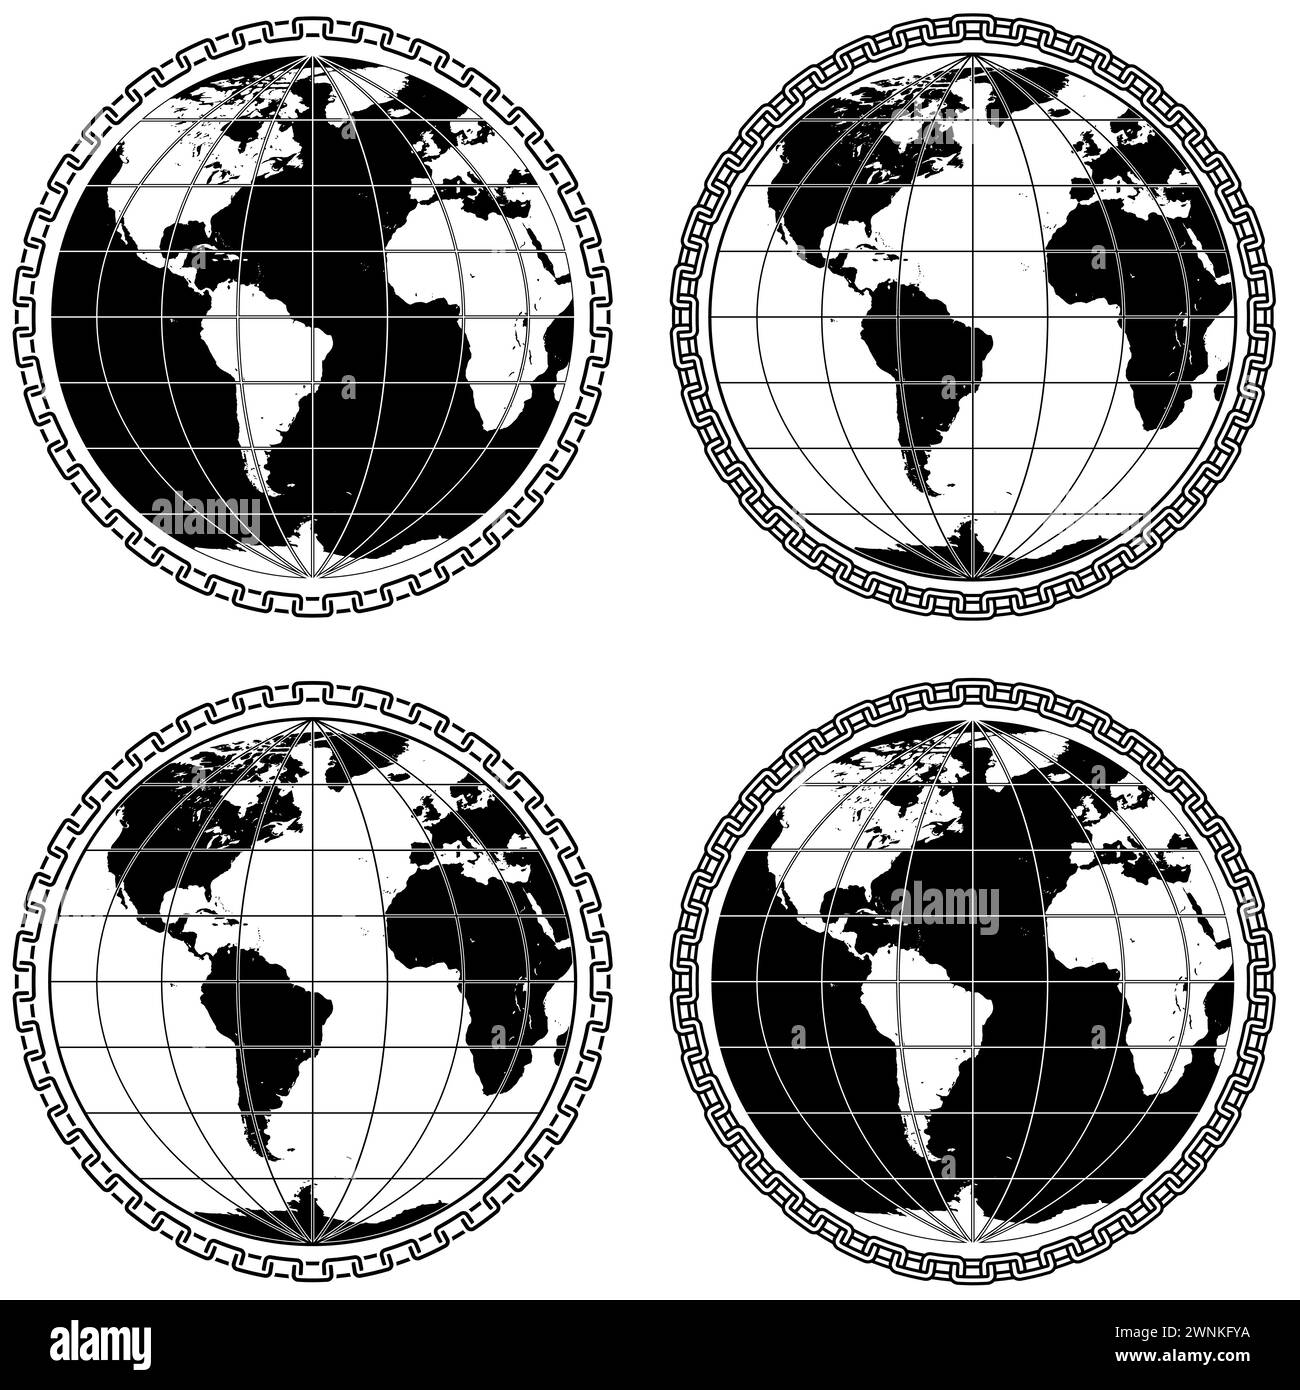 Vektordesign des Planeten Erde umgeben von Ketten, Design der Erdkugel mit Ketten Stock Vektor